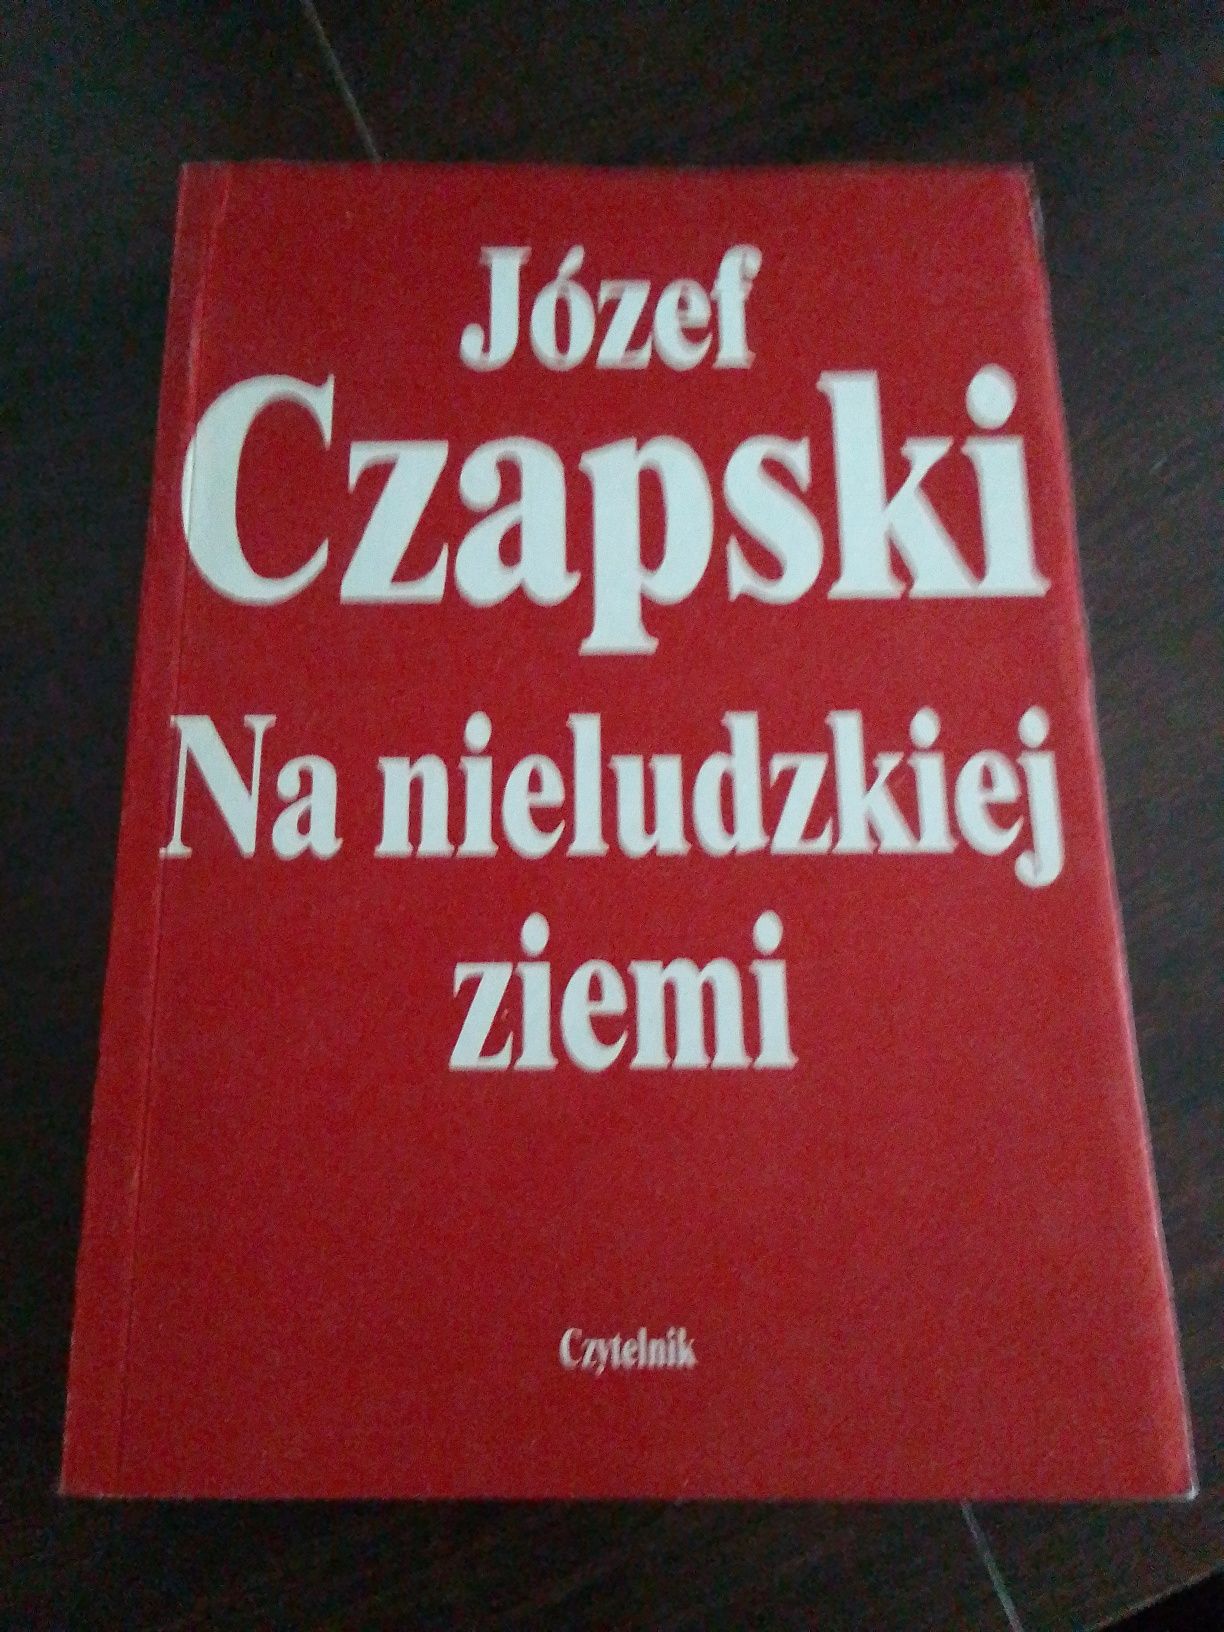 Książka pt "Na nieludzkiej ziemi" autor Józef Czapski W-wa 1990